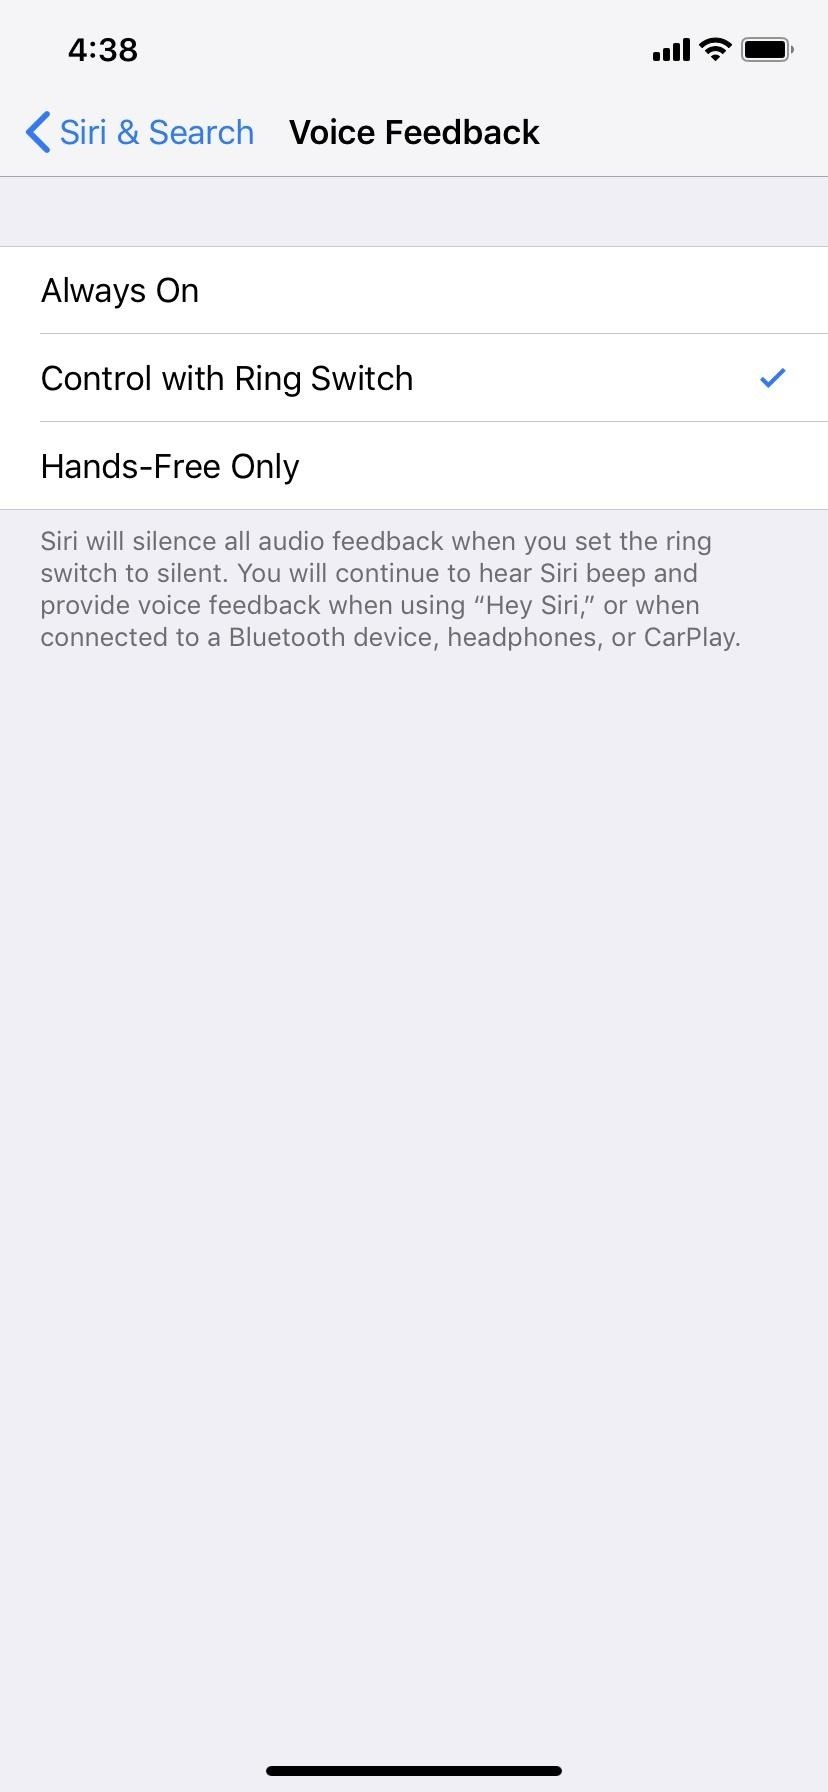 How to Turn Off Voice Feedback for Siri (Aka Mute Siri)